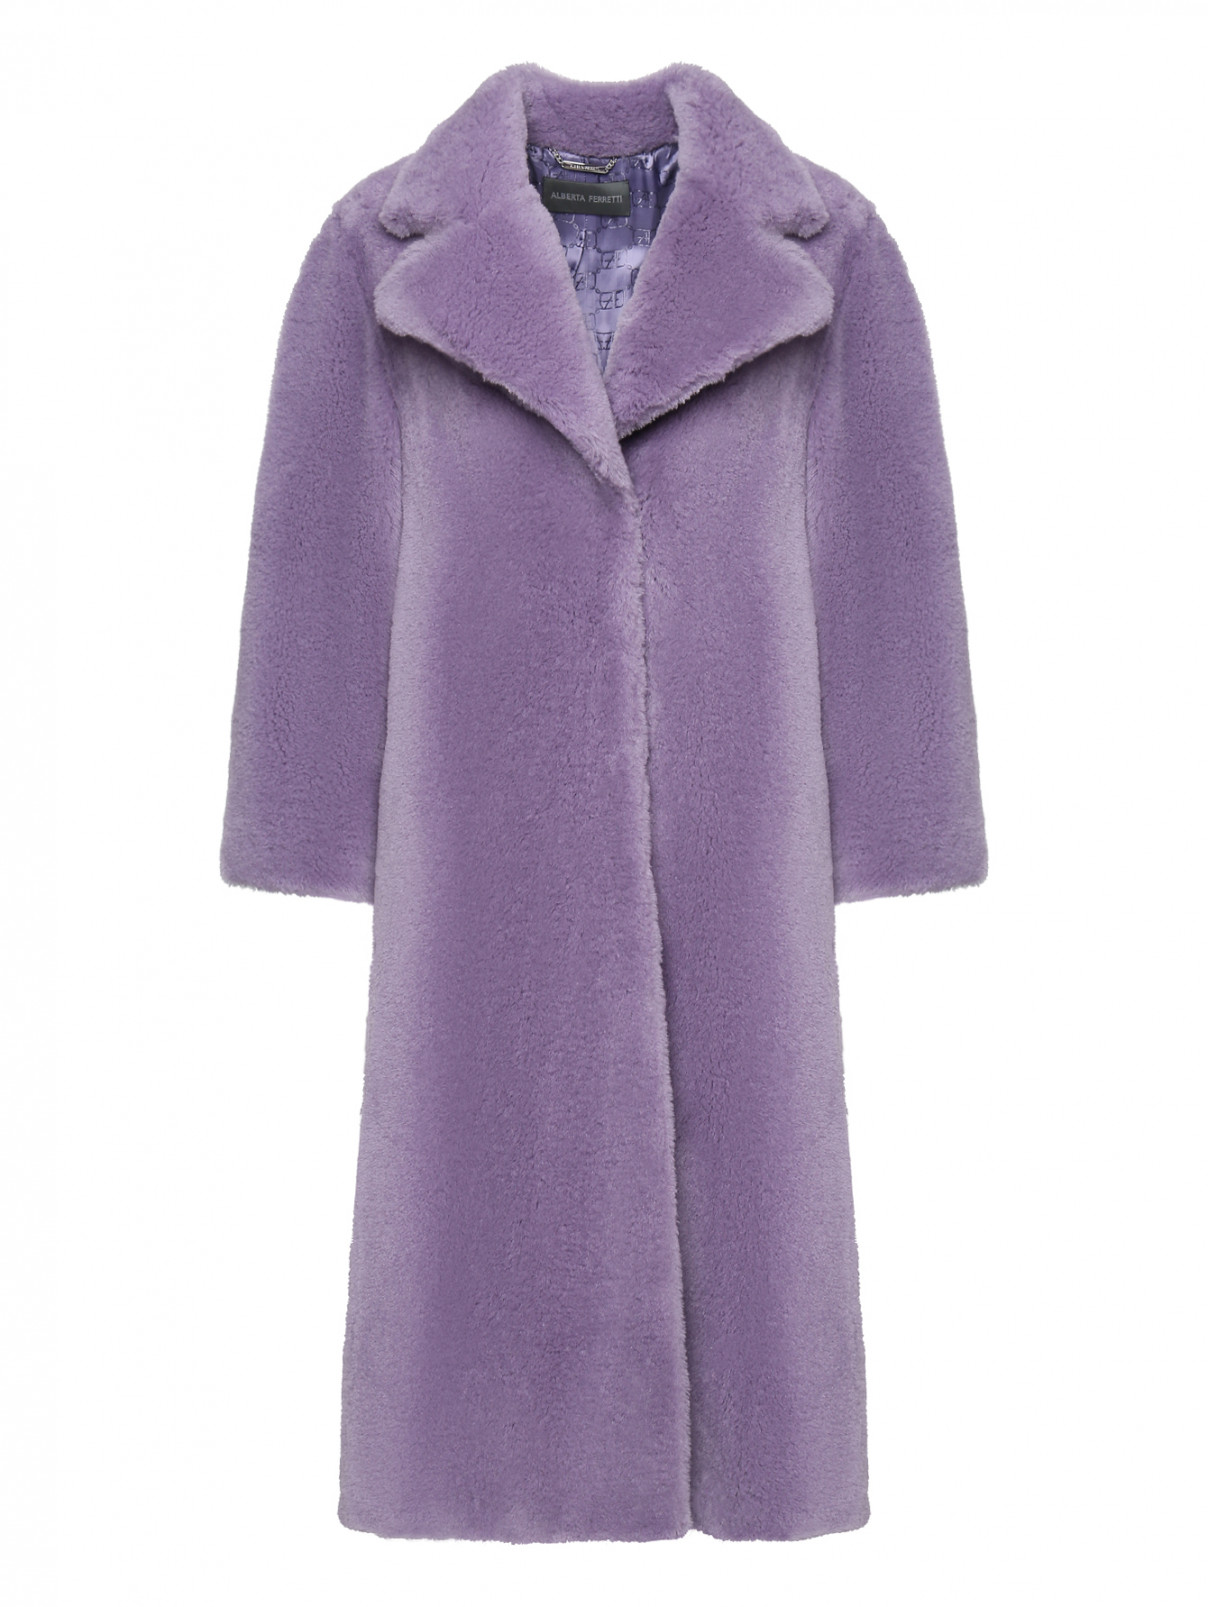 Шуба из шерсти с карманами Alberta Ferretti  –  Общий вид  – Цвет:  Фиолетовый